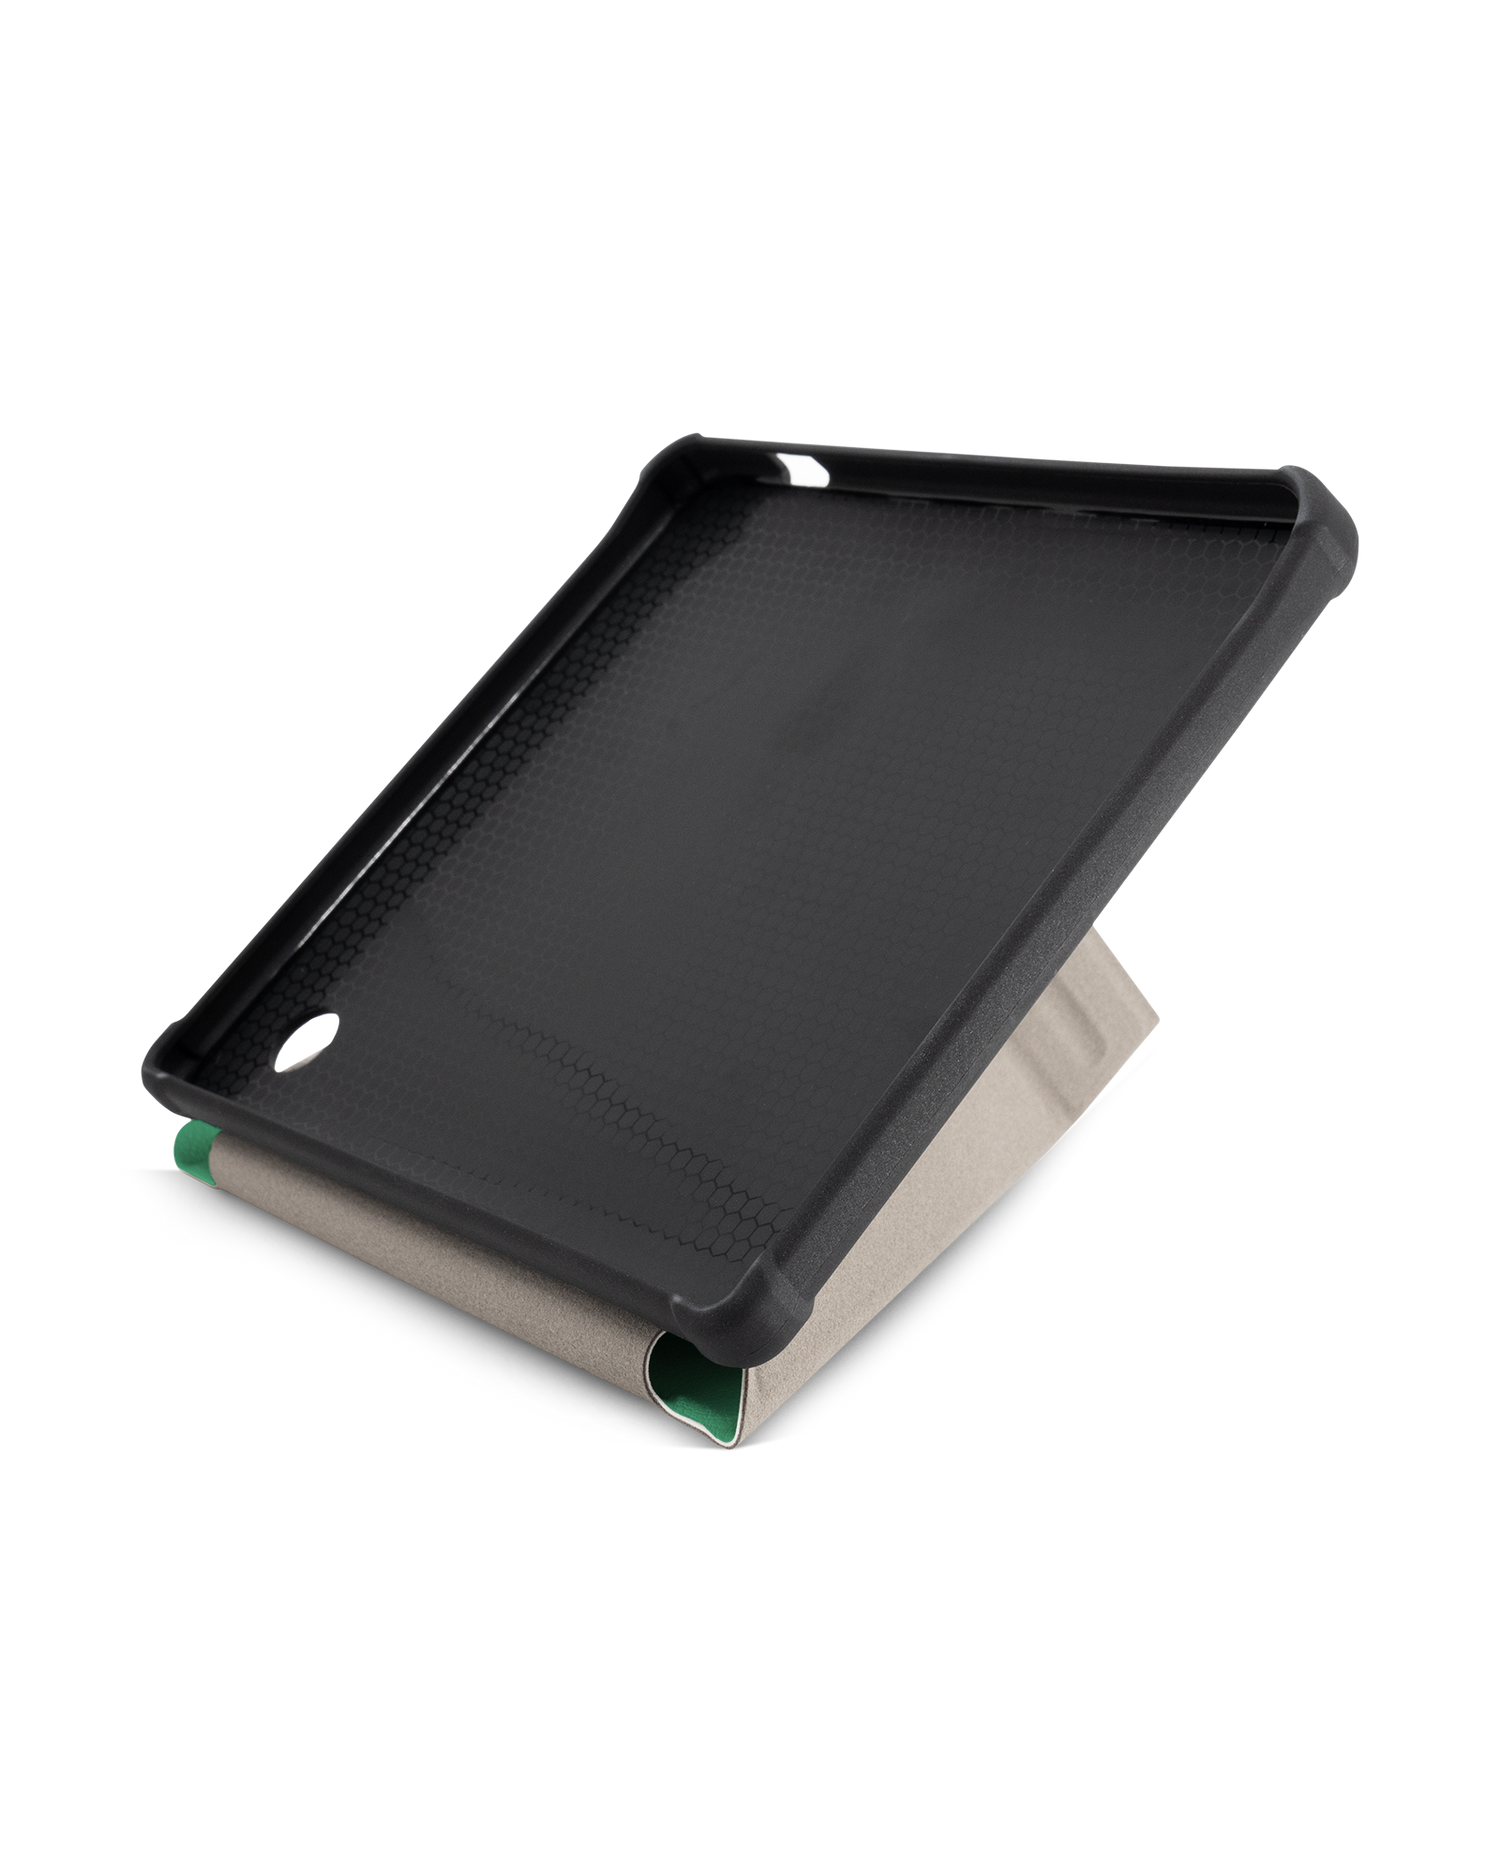 ISG Neon Green eBook-Reader Smart Case für tolino vision 5 (2019): Aufgestellt im Querformat Innenansicht